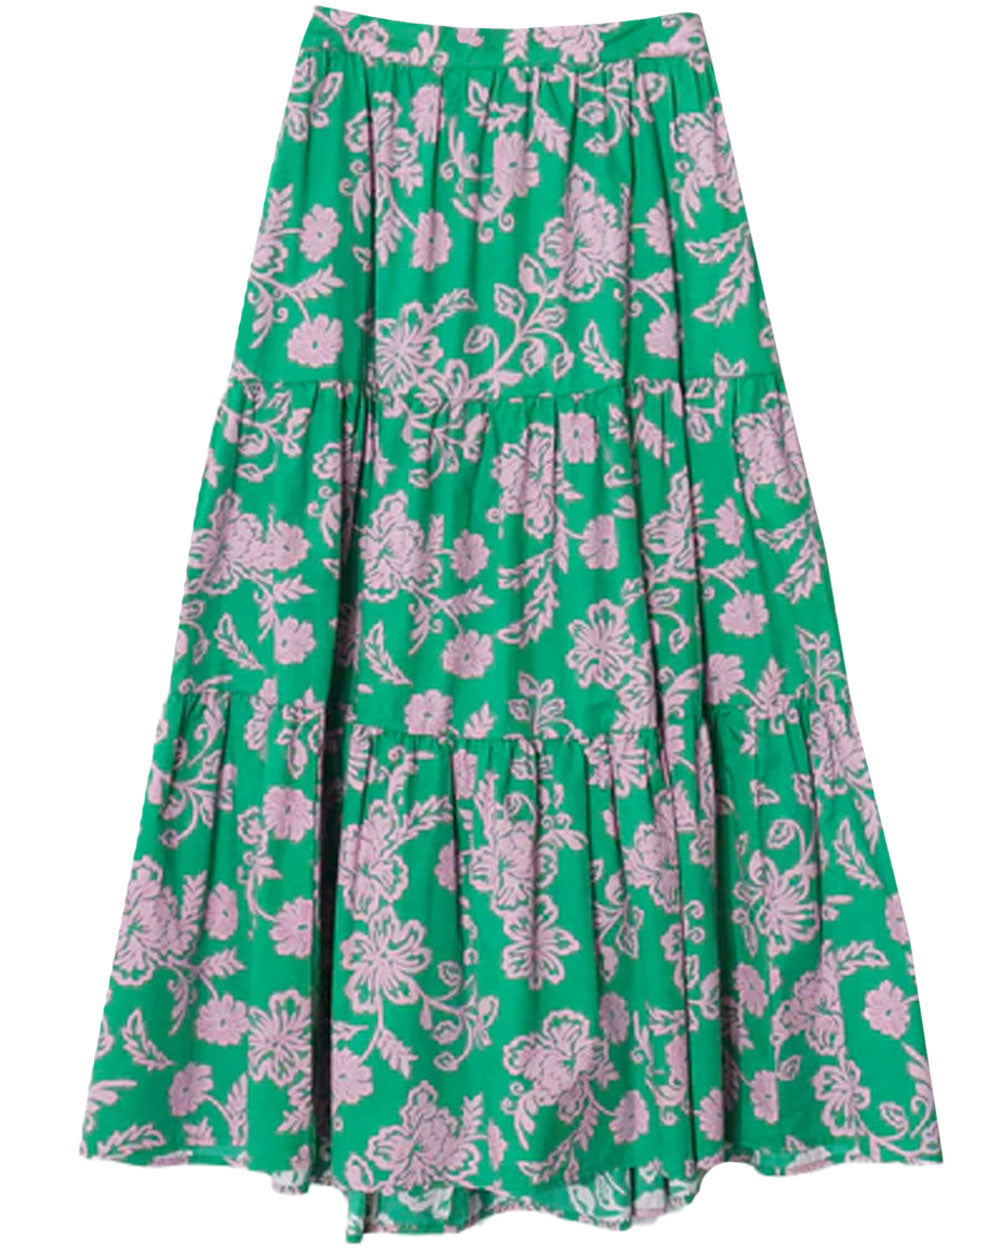 Caprisyn Green Angeline Skirt